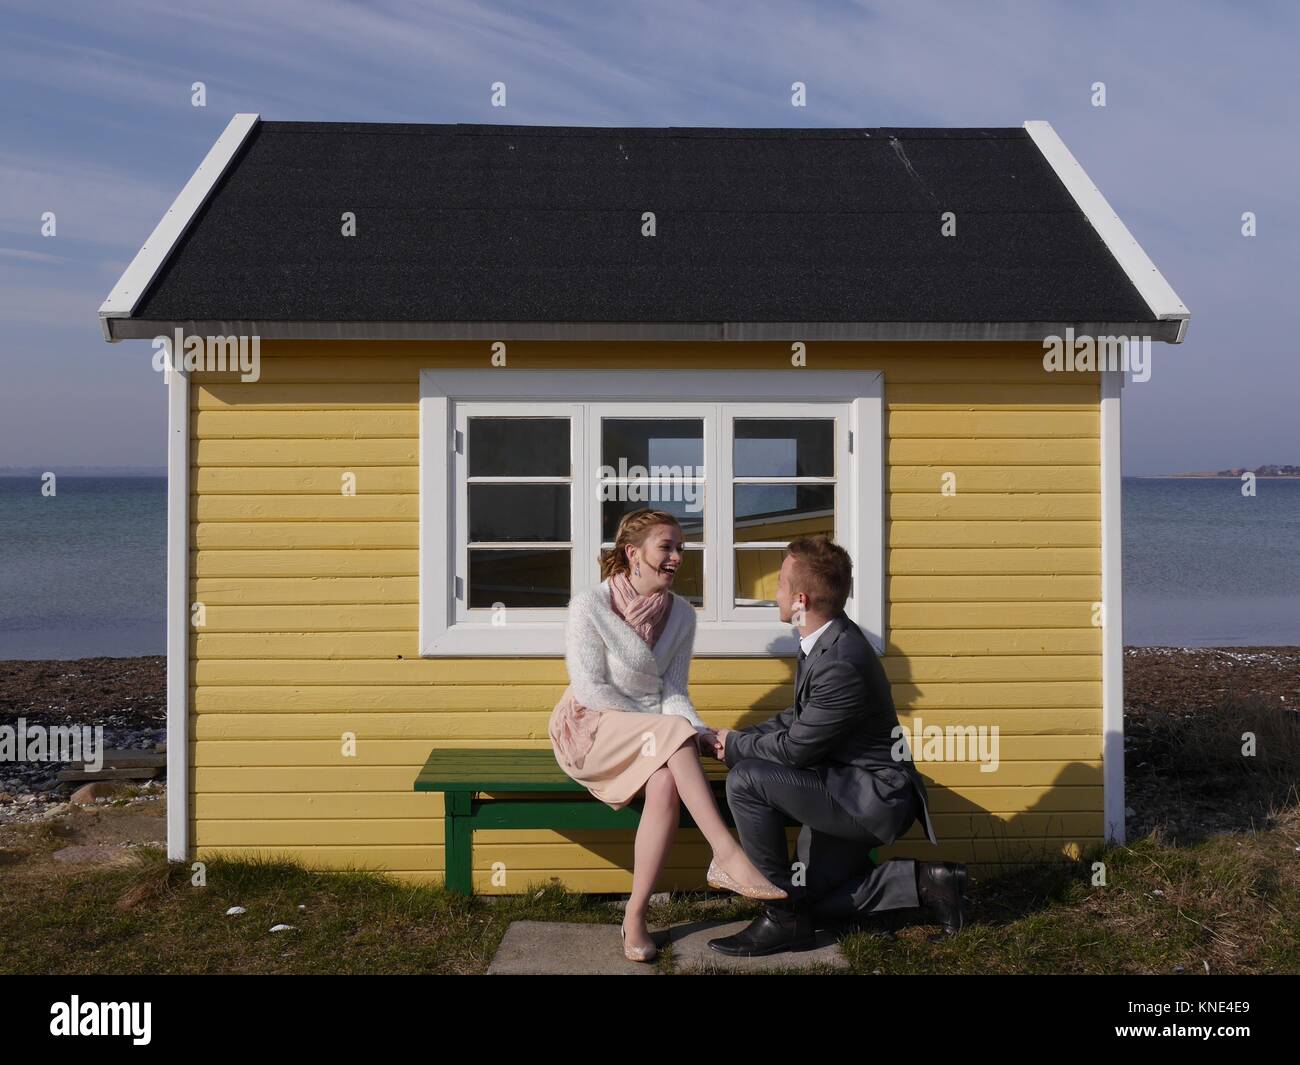 Nahaufnahme eines attraktiven jungen Paares am Strand vor einer niedlichen gelben Strandhütte an einem windigen Wintertag, der sich gegenseitig in die Augen schaut Stockfoto